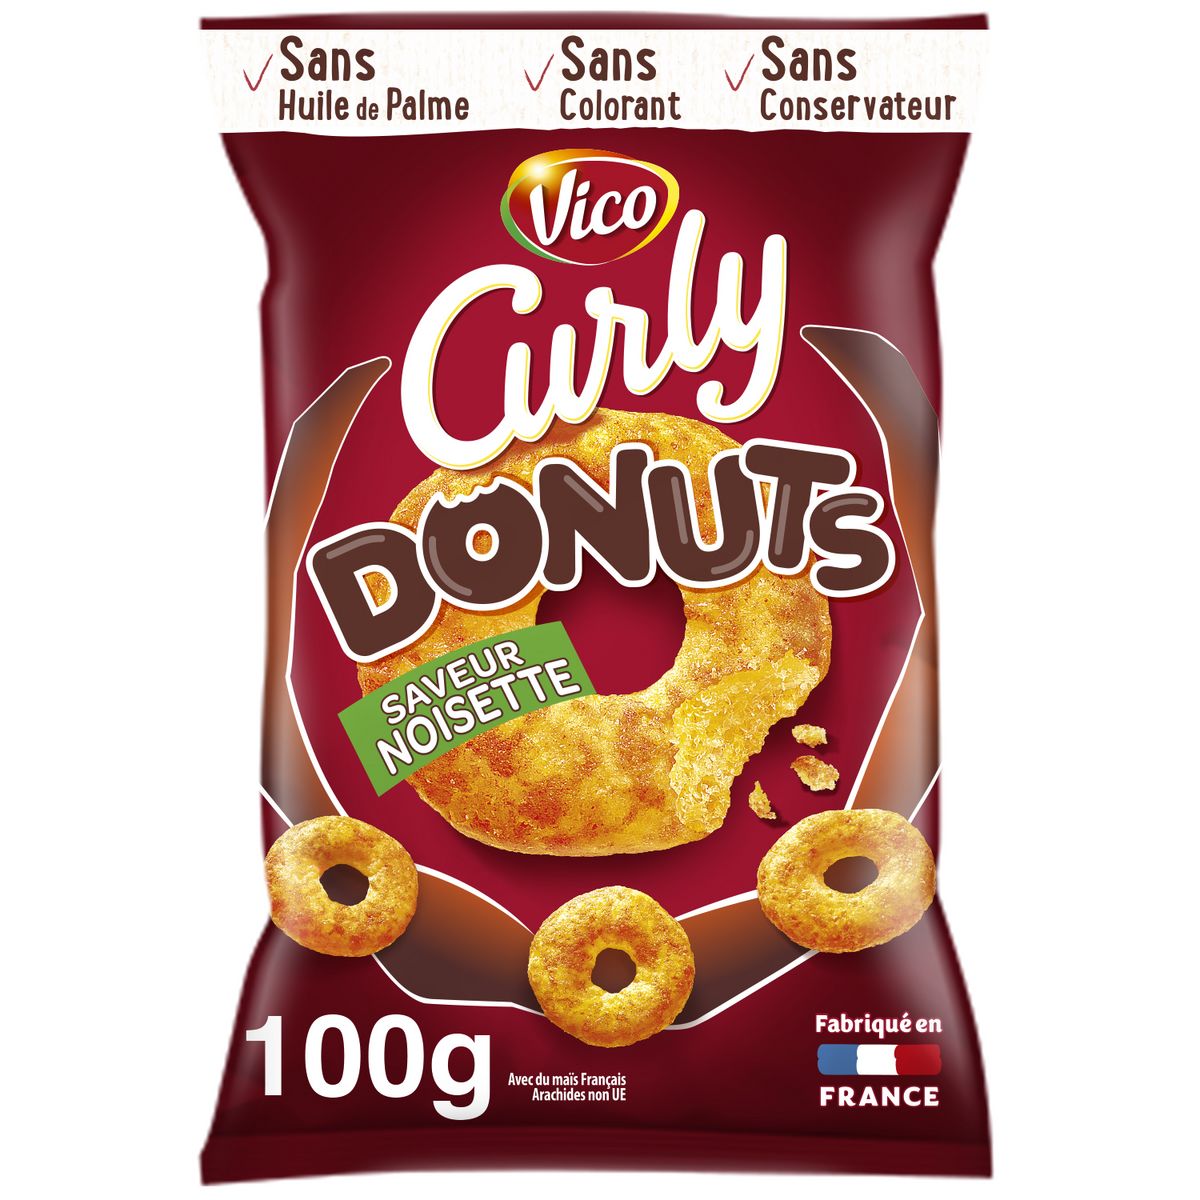 CURLY Biscuits soufflés donuts goût noisette sucré-salé 100g